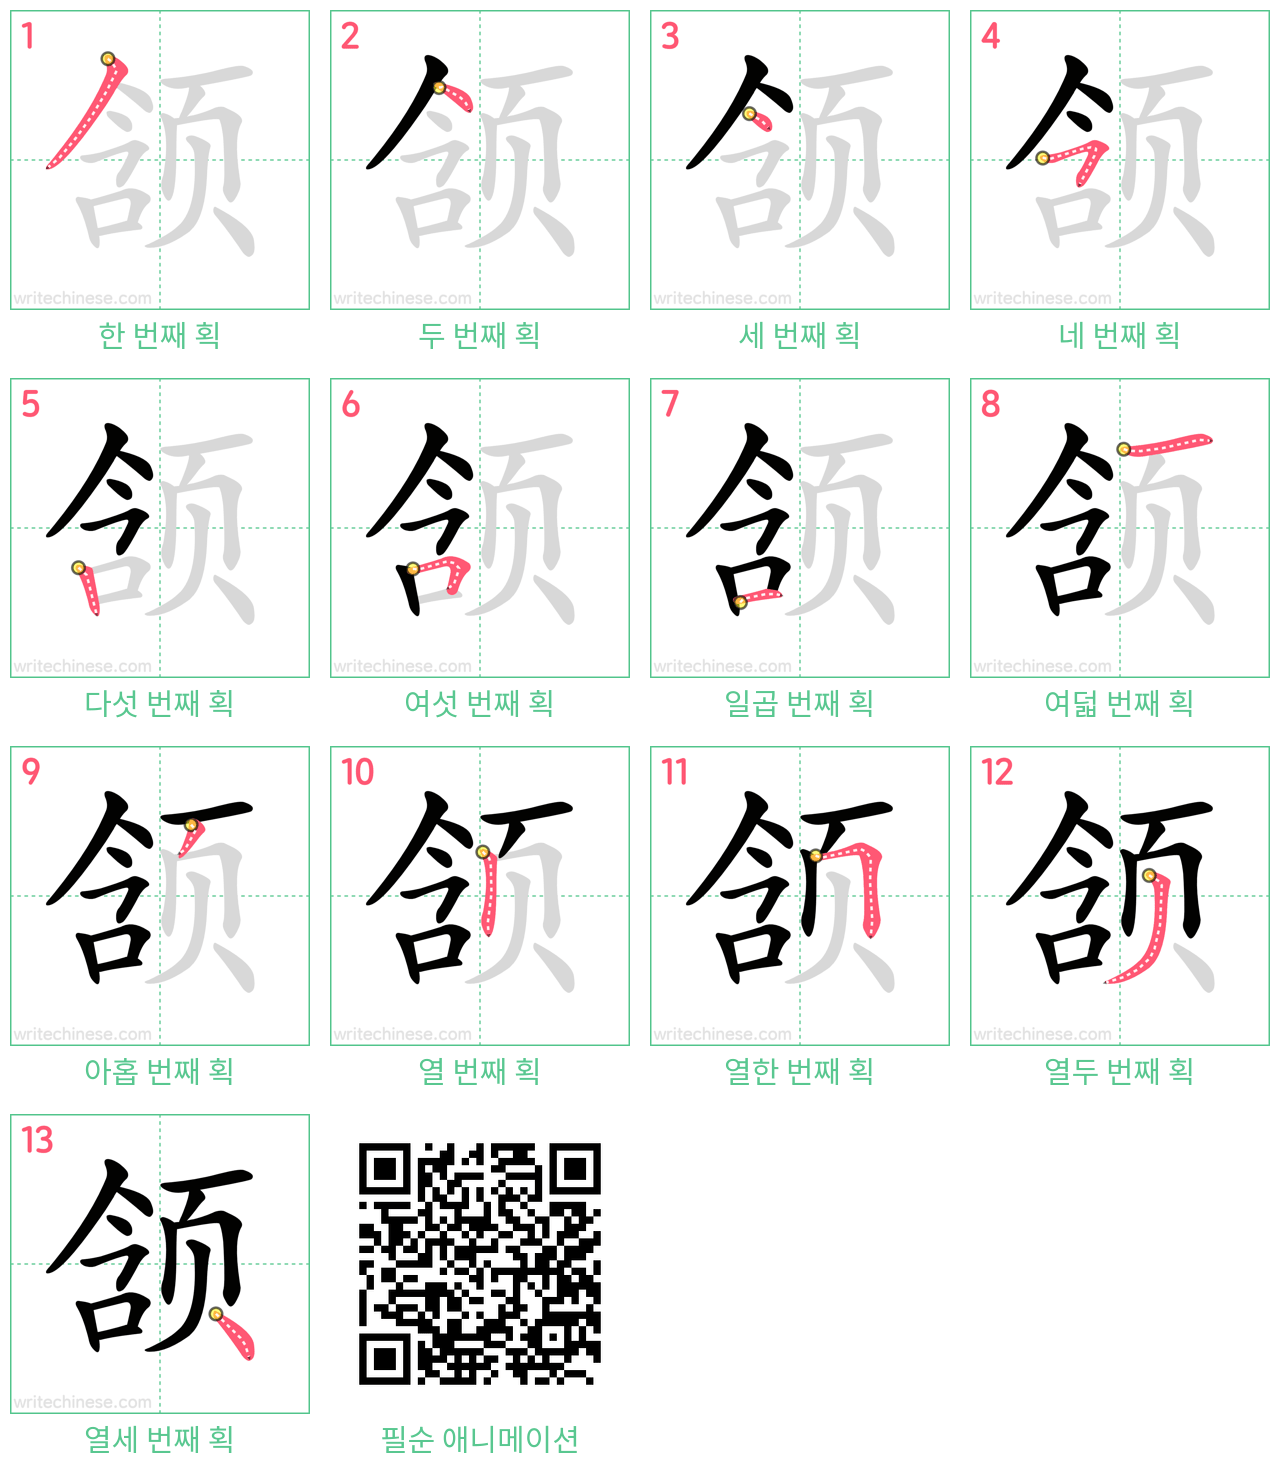 颔 step-by-step stroke order diagrams